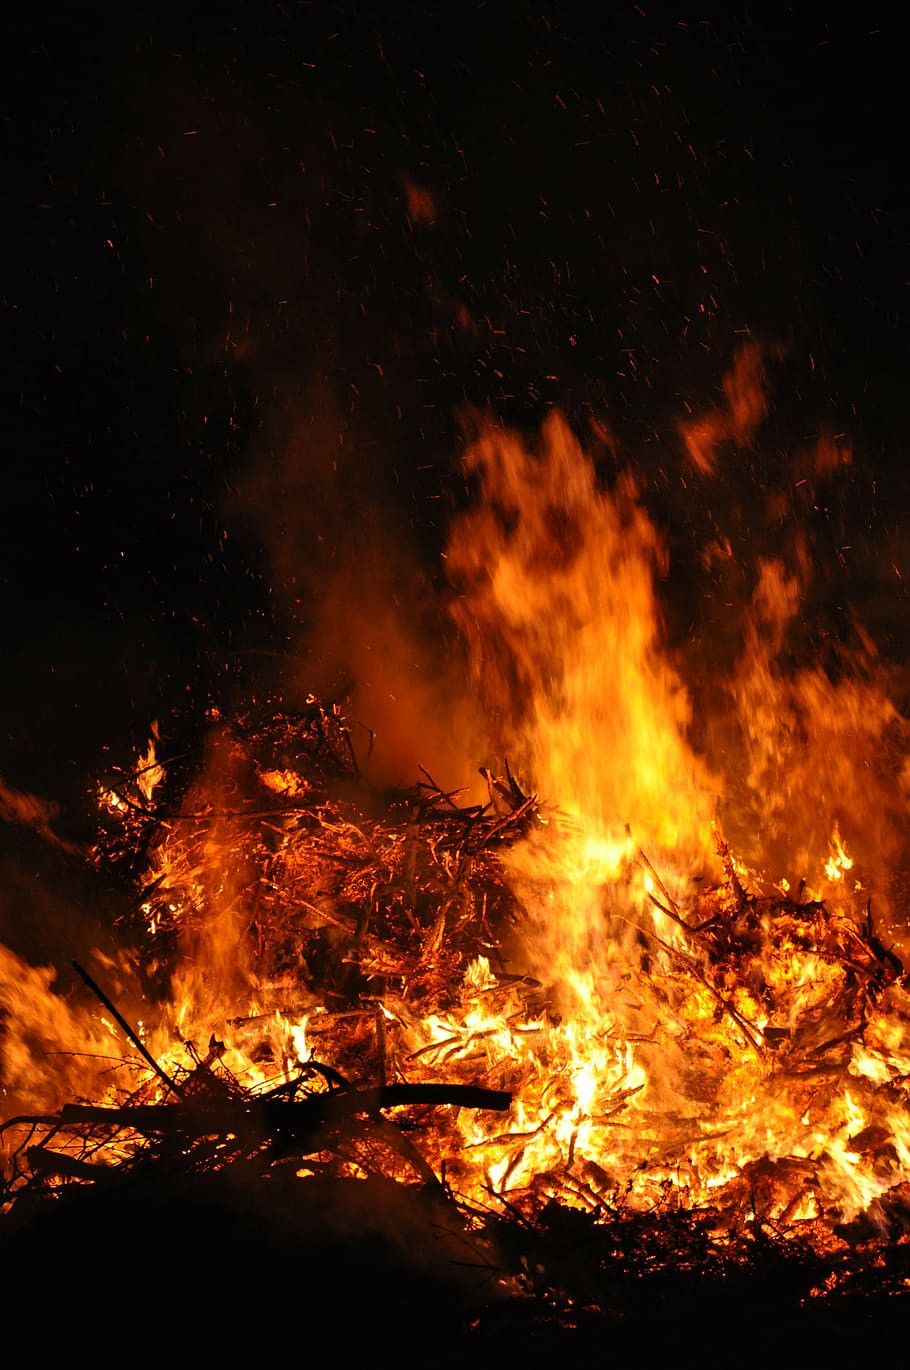 fuego de pascua, noche, llama, fuego, ardor, fuego - fenómeno natural, calor - temperatura, hoguera, movimiento, color naranja